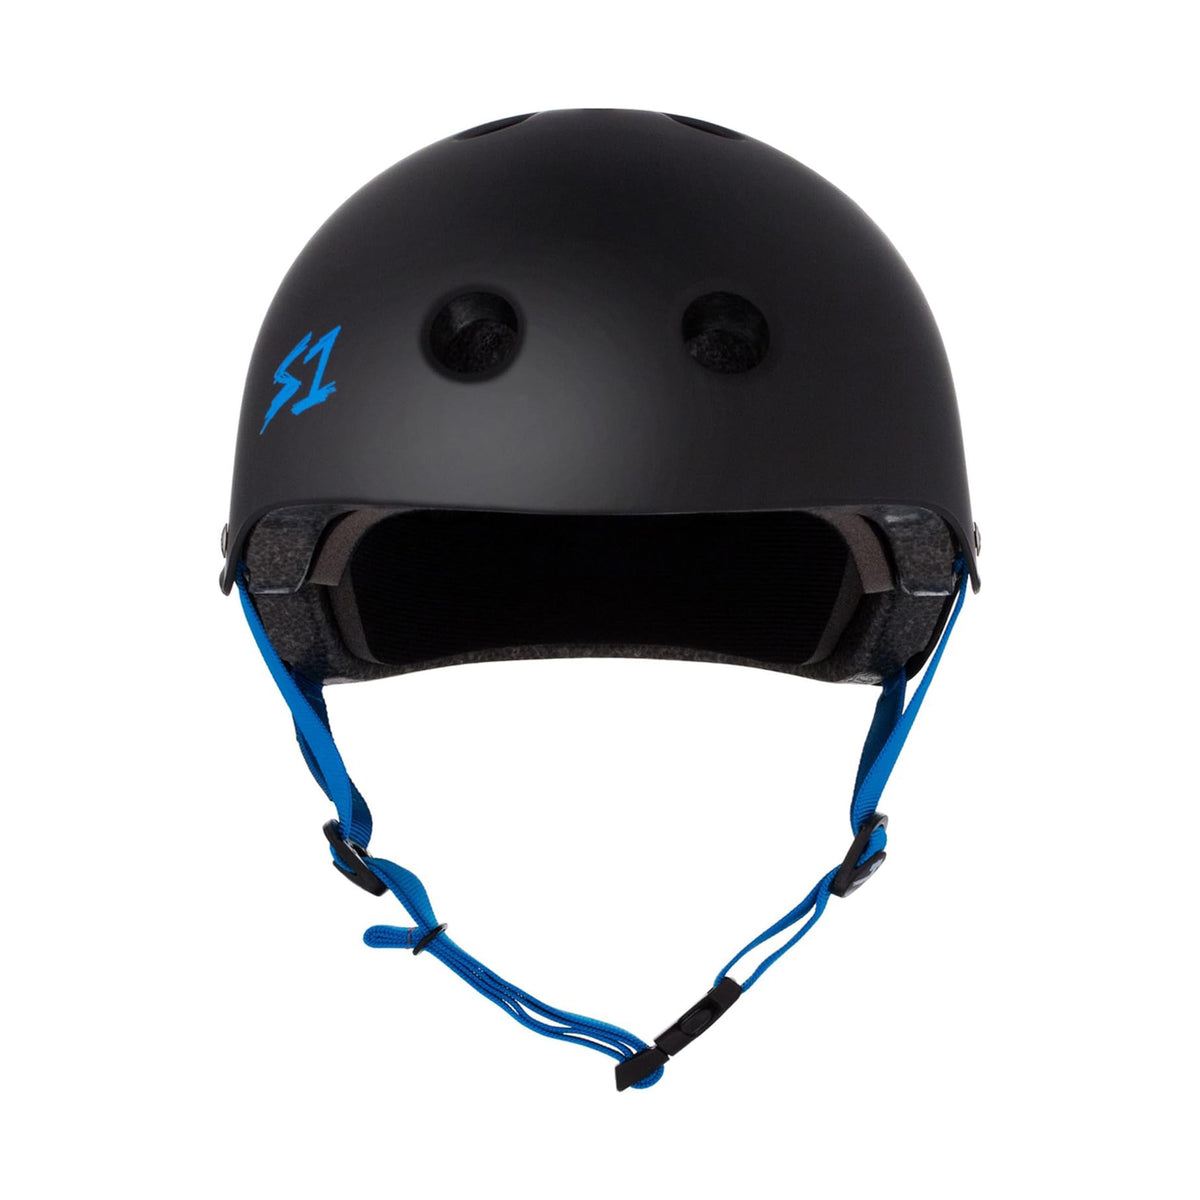 S1 Lifer Helmet - Matte Black w/ Cyan Straps